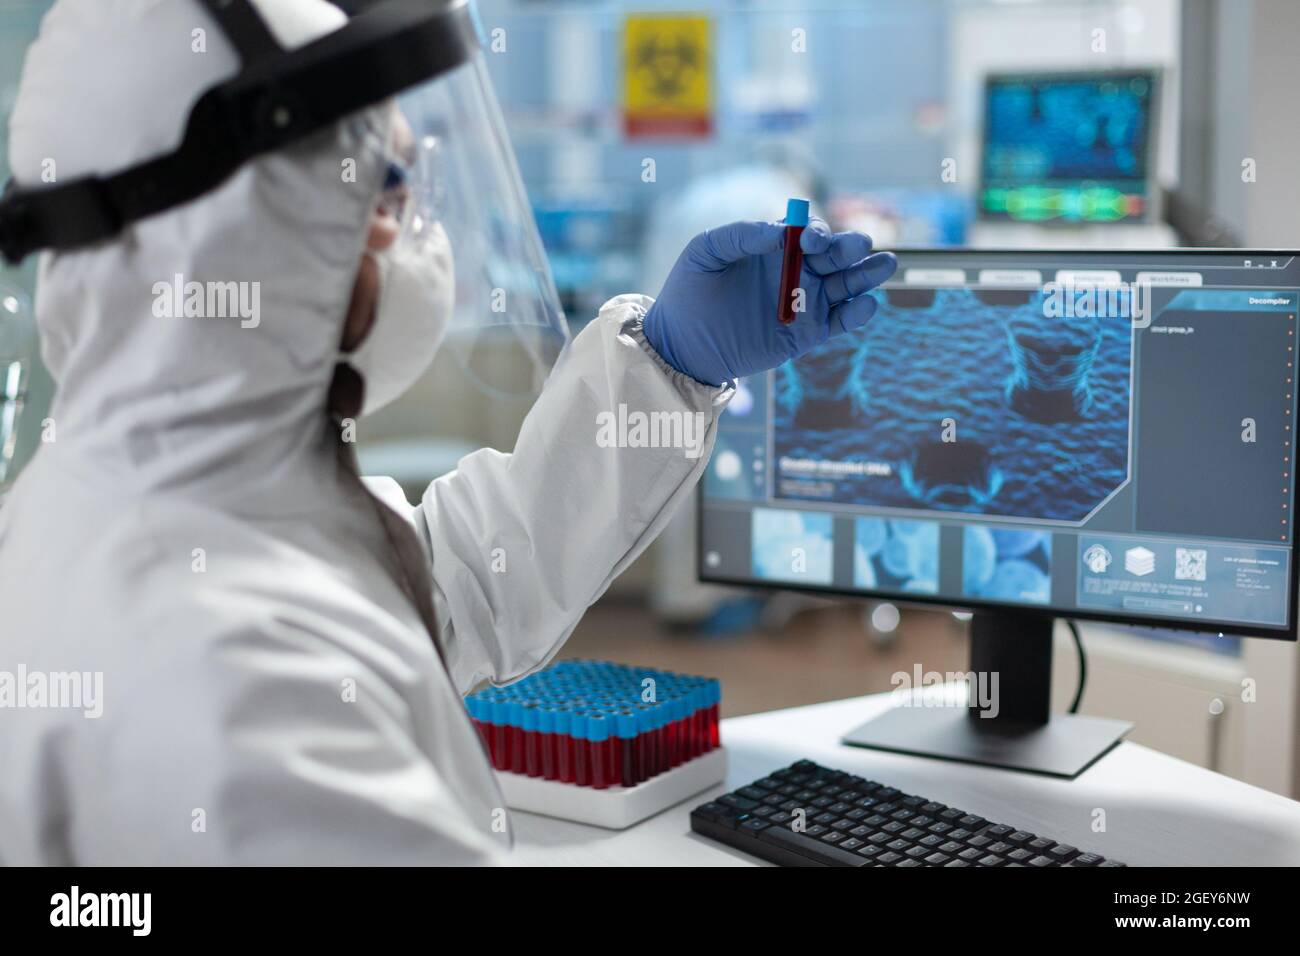 Chemiker Forscher hält medizinische Reagenzglas mit genetischer Blut in den Händen Analyse klinischer Expertise während der Biochemie Experiment. Wissenschaftler mit PSA-Schutzausrüstung im wissenschaftlichen Labor Stockfoto